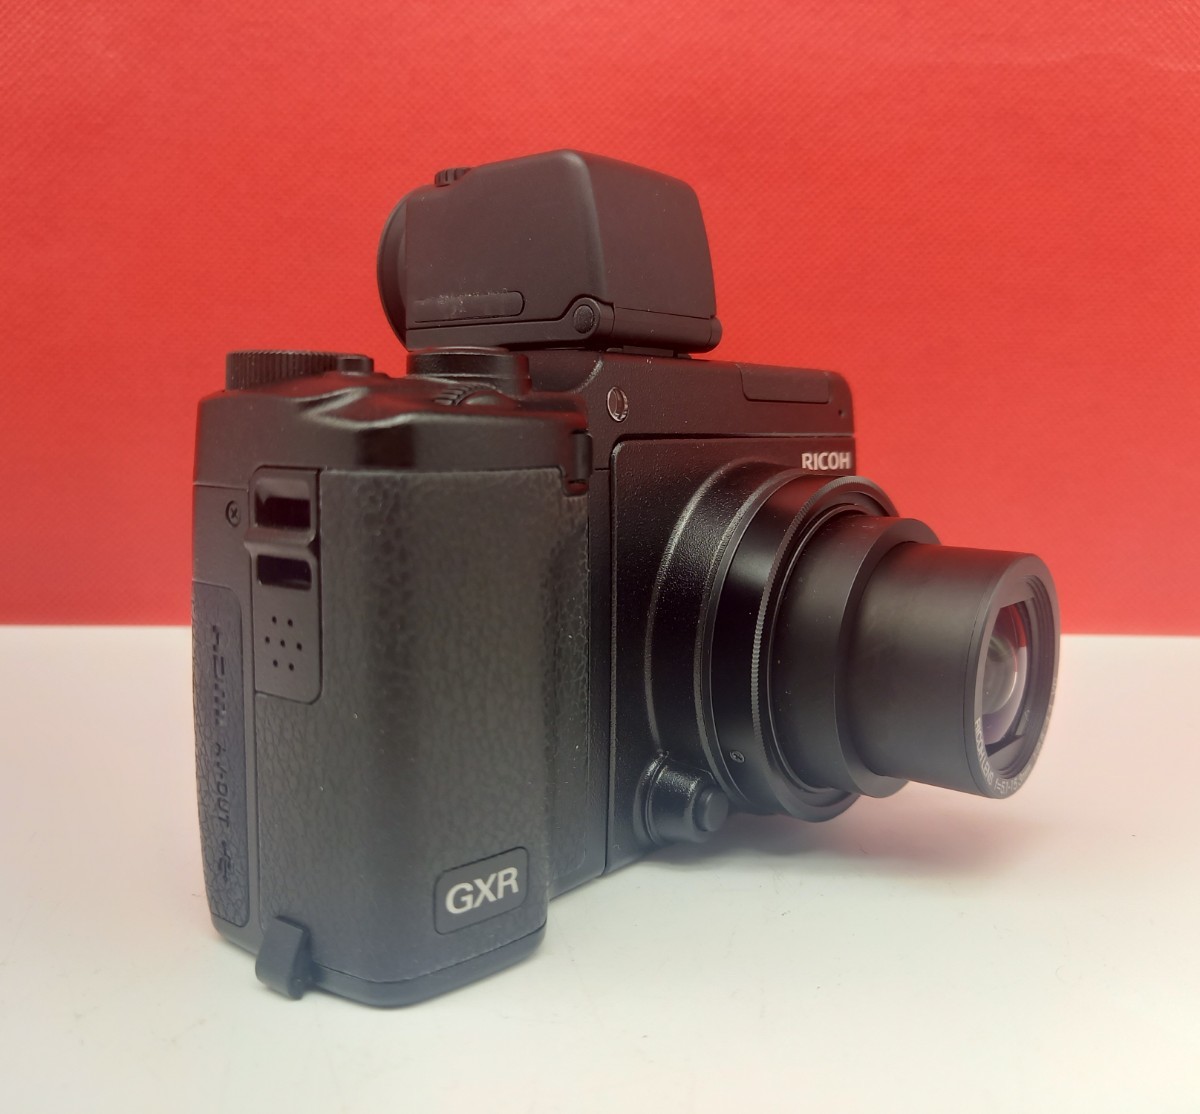 □B RICOH GXR デジタル一眼レフカメラ 5.1-15.3mm F2.5-4.4 4.9-52.5